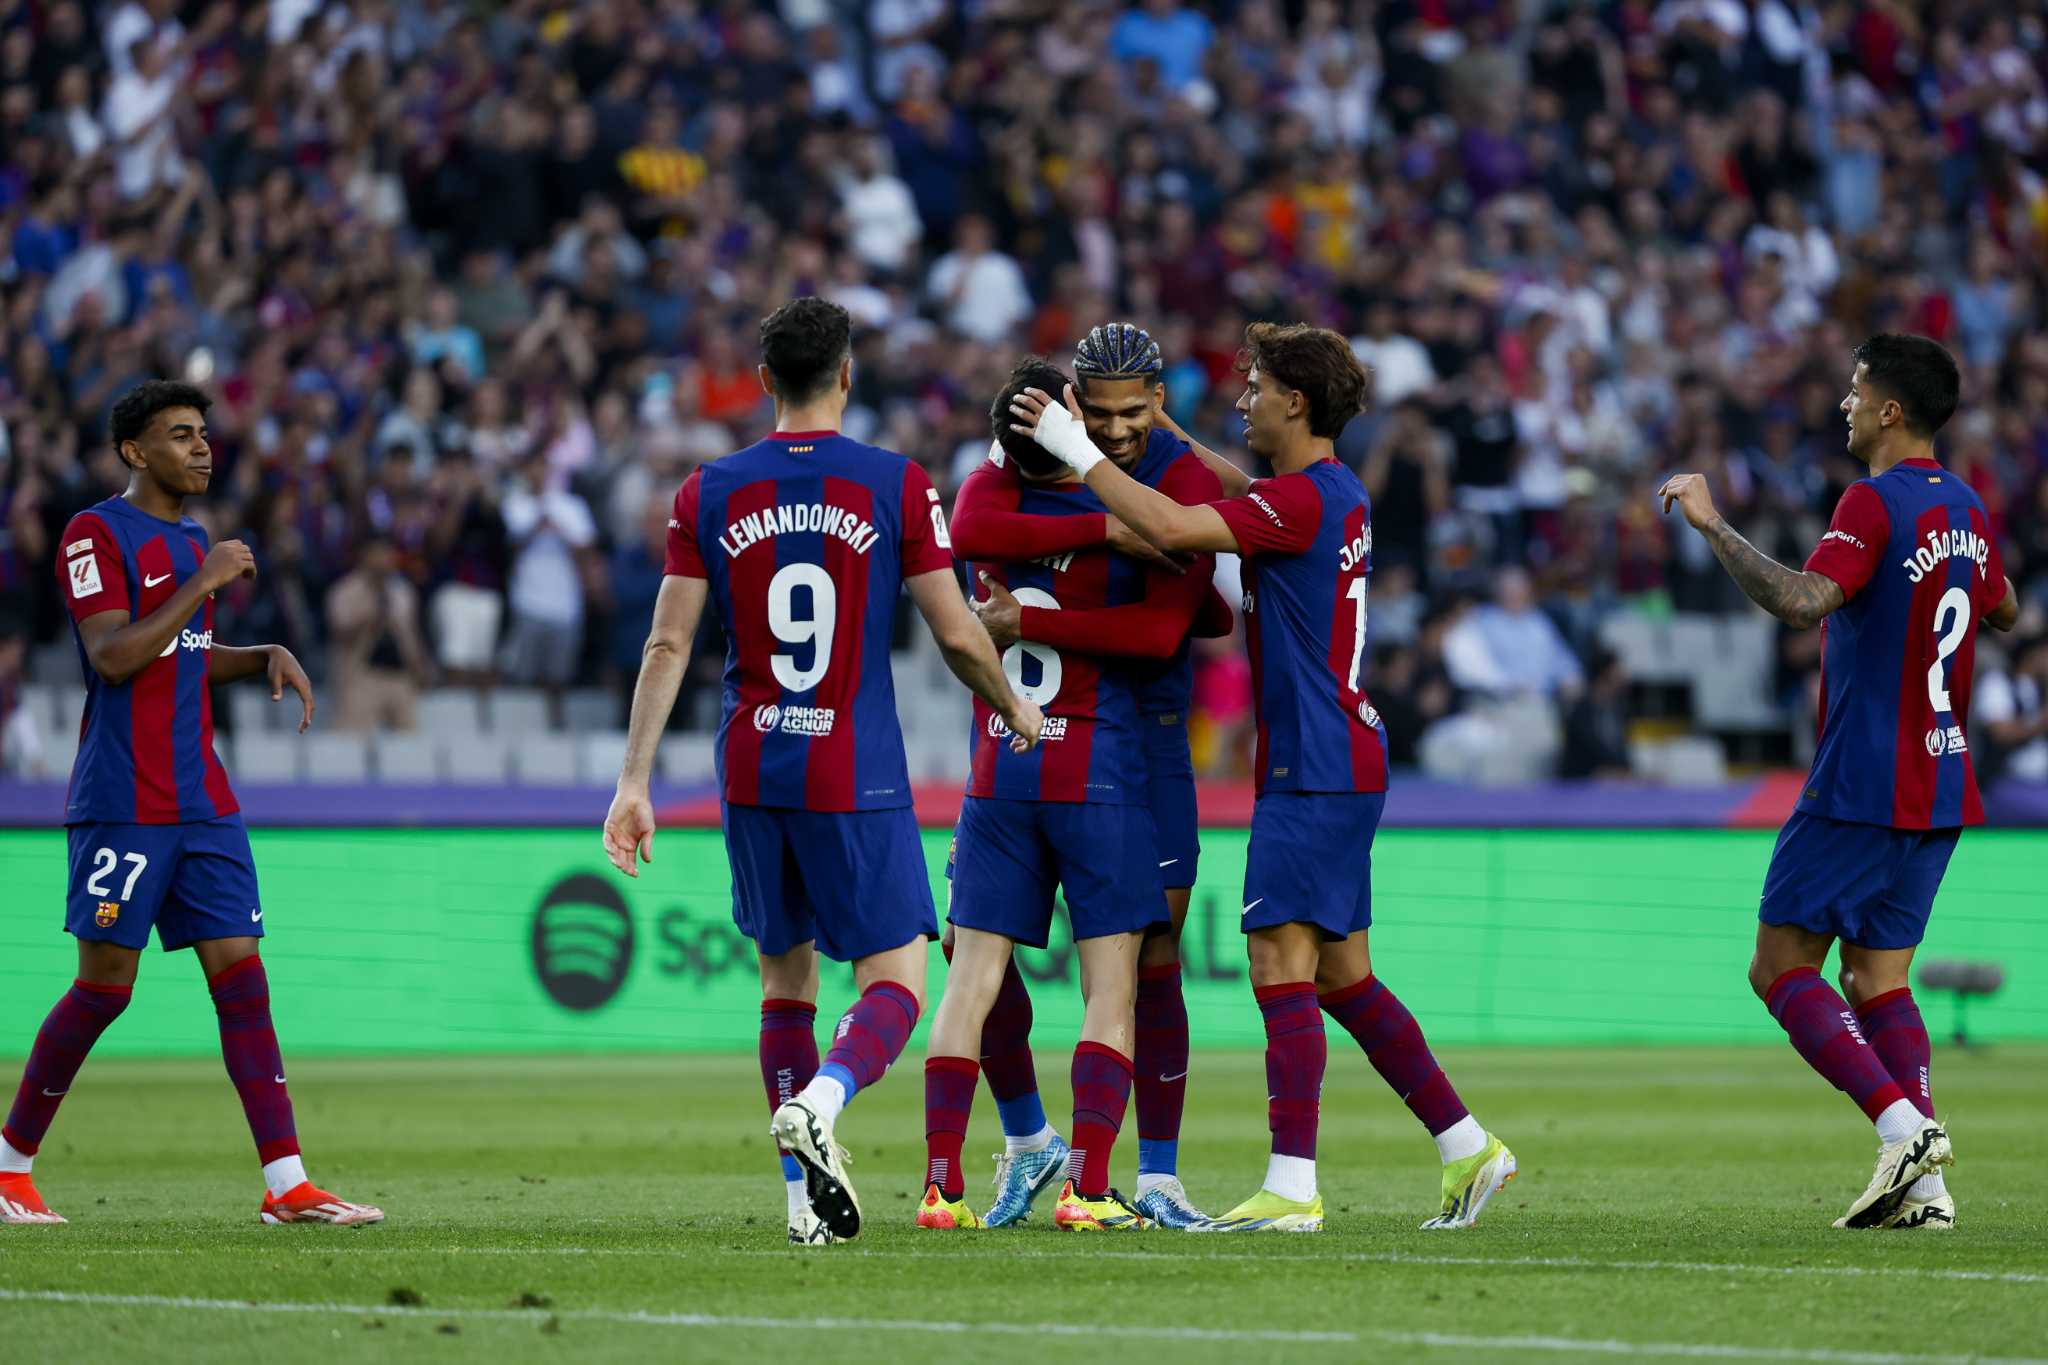 El Barcelona terminó en un rentable segundo lugar en España, Chorloth anotó 4 y el Villarreal empató con el Real Madrid.